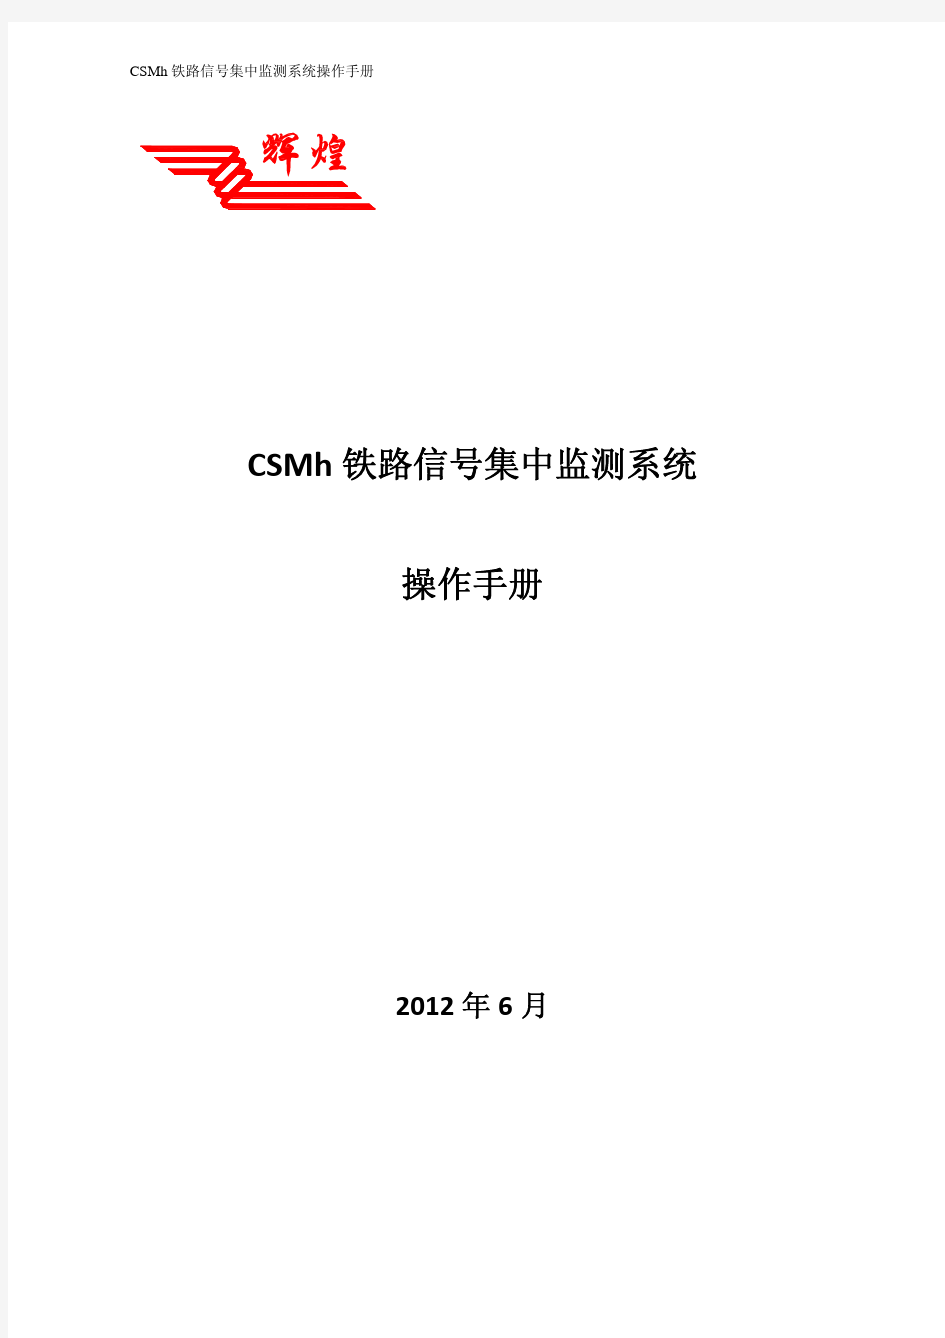 CSMh铁路信号集中监测系统操作手册